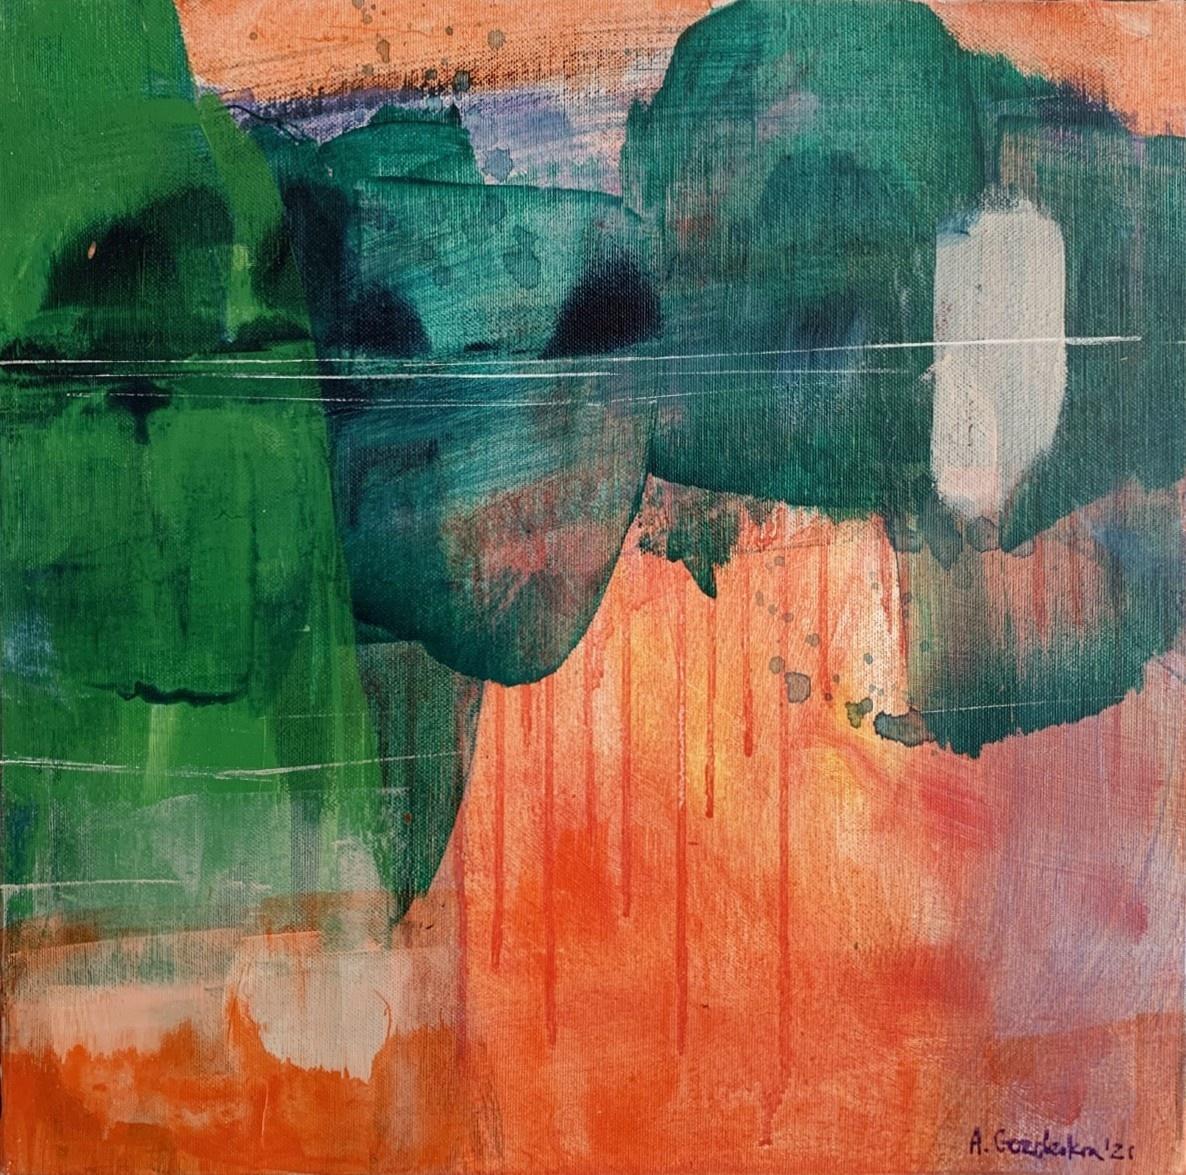 Grüner Wald - Zeitgenössische abstrakte Malerei Acrylfarben, polnischer Künstler